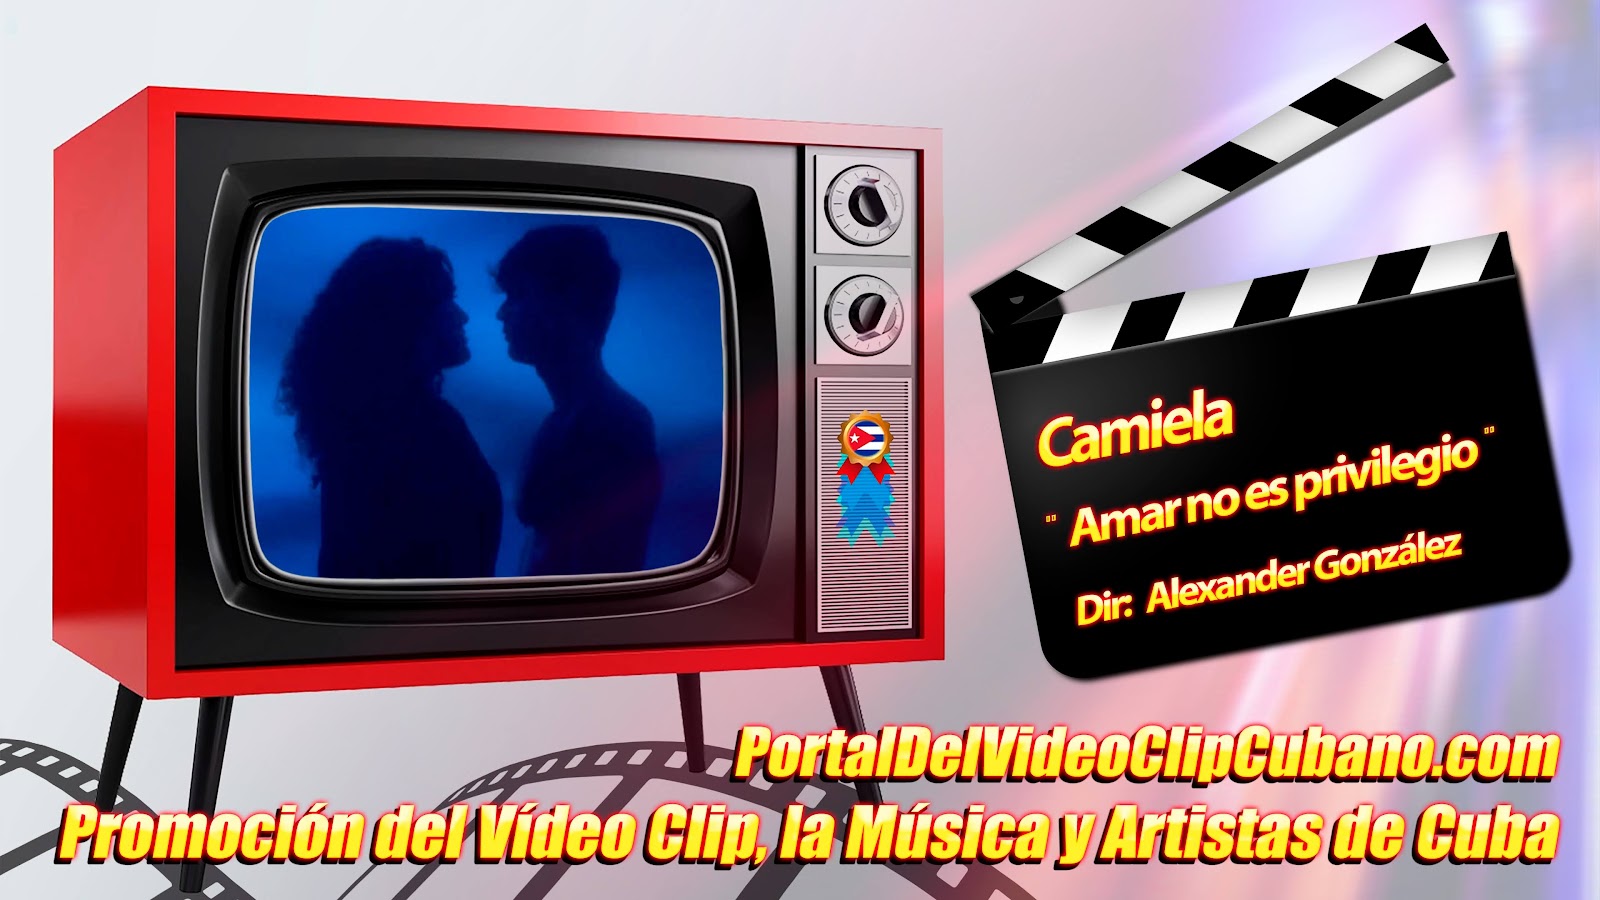 Camiela - ¨Amar no es privilegio¨ - Director: Alexander González. Portal Del Vídeo Clip Cubano. Música Cubana. Canción. EGREM. CUBA.